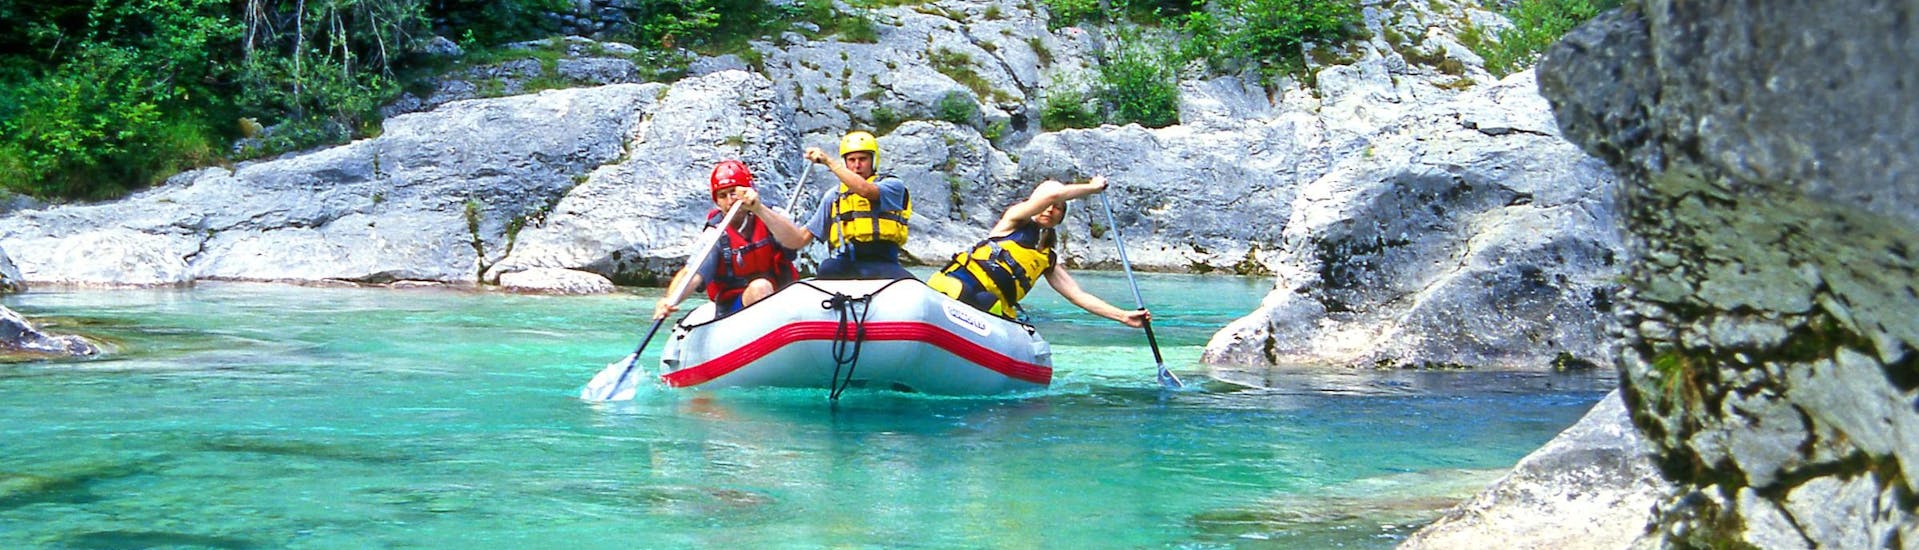 Fratarca: Een groep jongeren geniet van een wildwateravontuur in een van de hotspots voor rafting en canyoning.